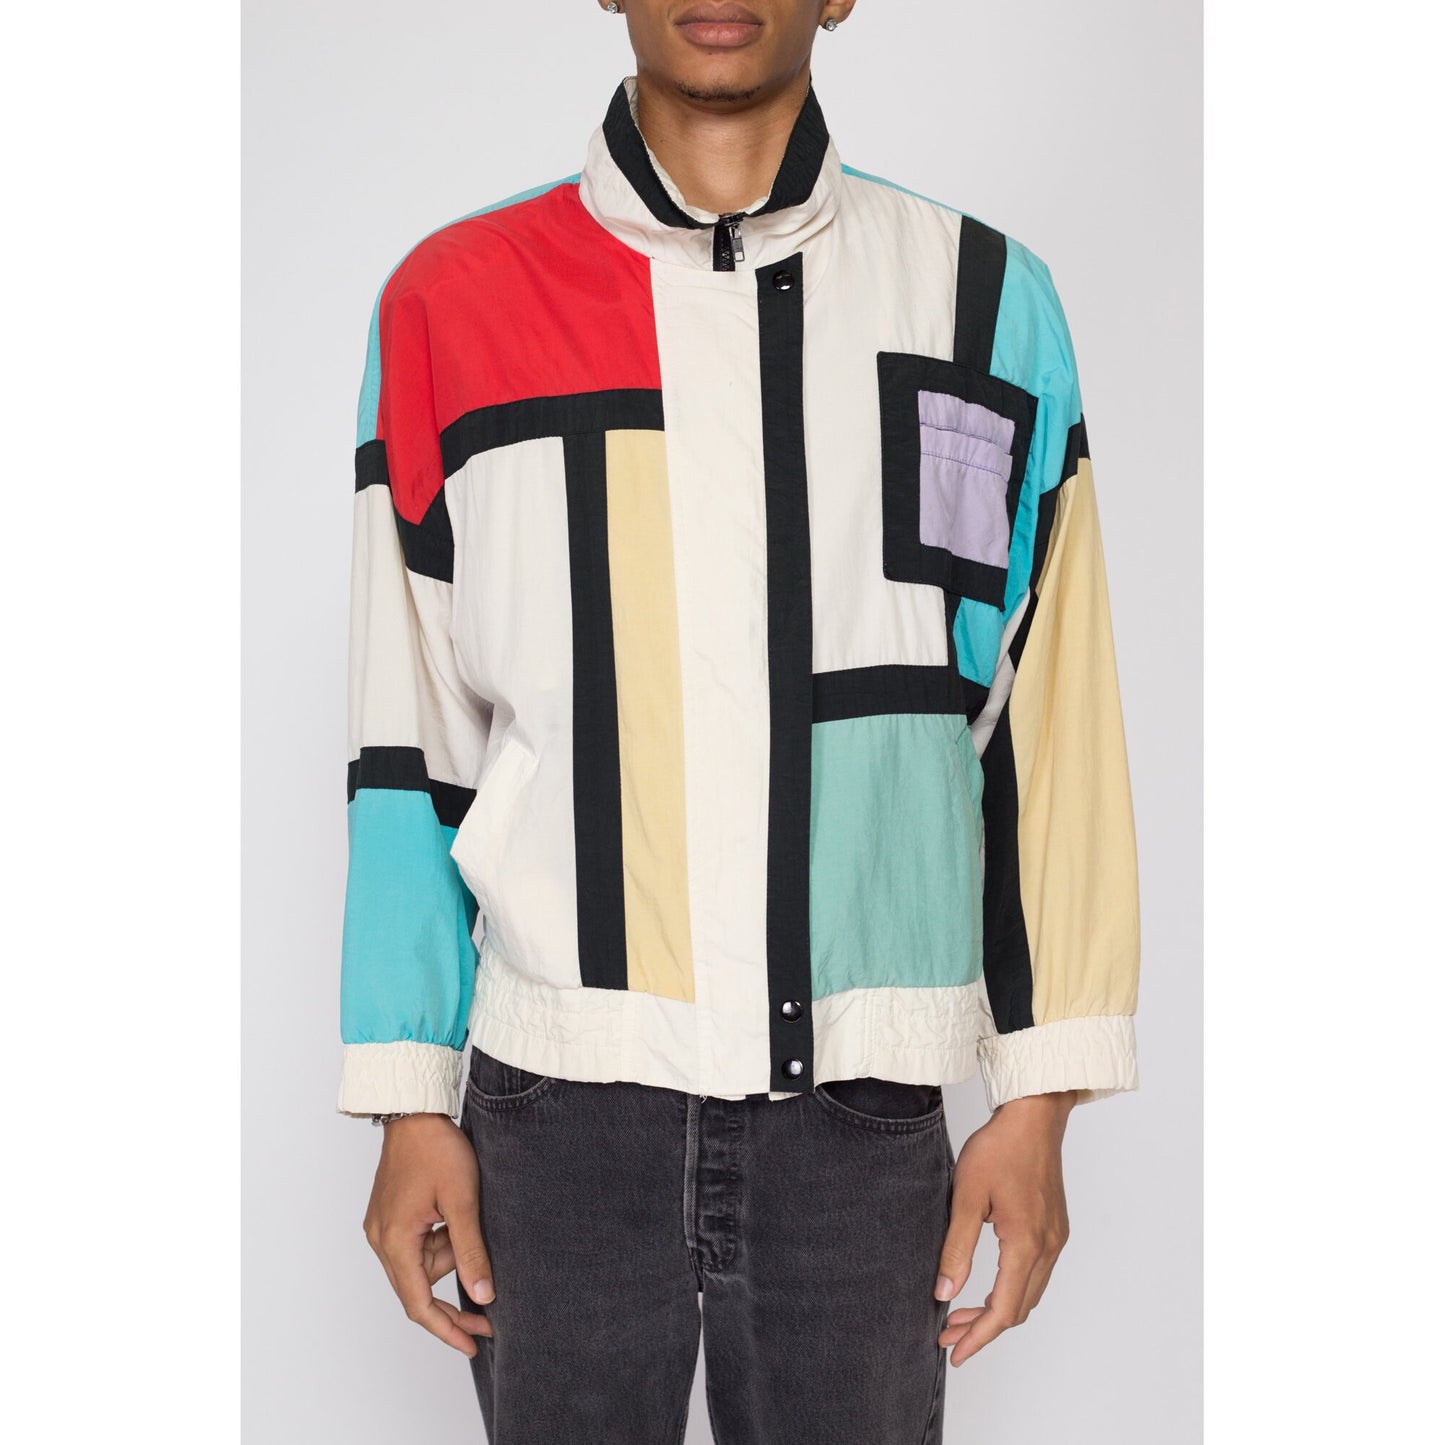 Medium 80s Mondrian Color Block Windbreaker | Retro Vintage Colorful Zip Up Jacket